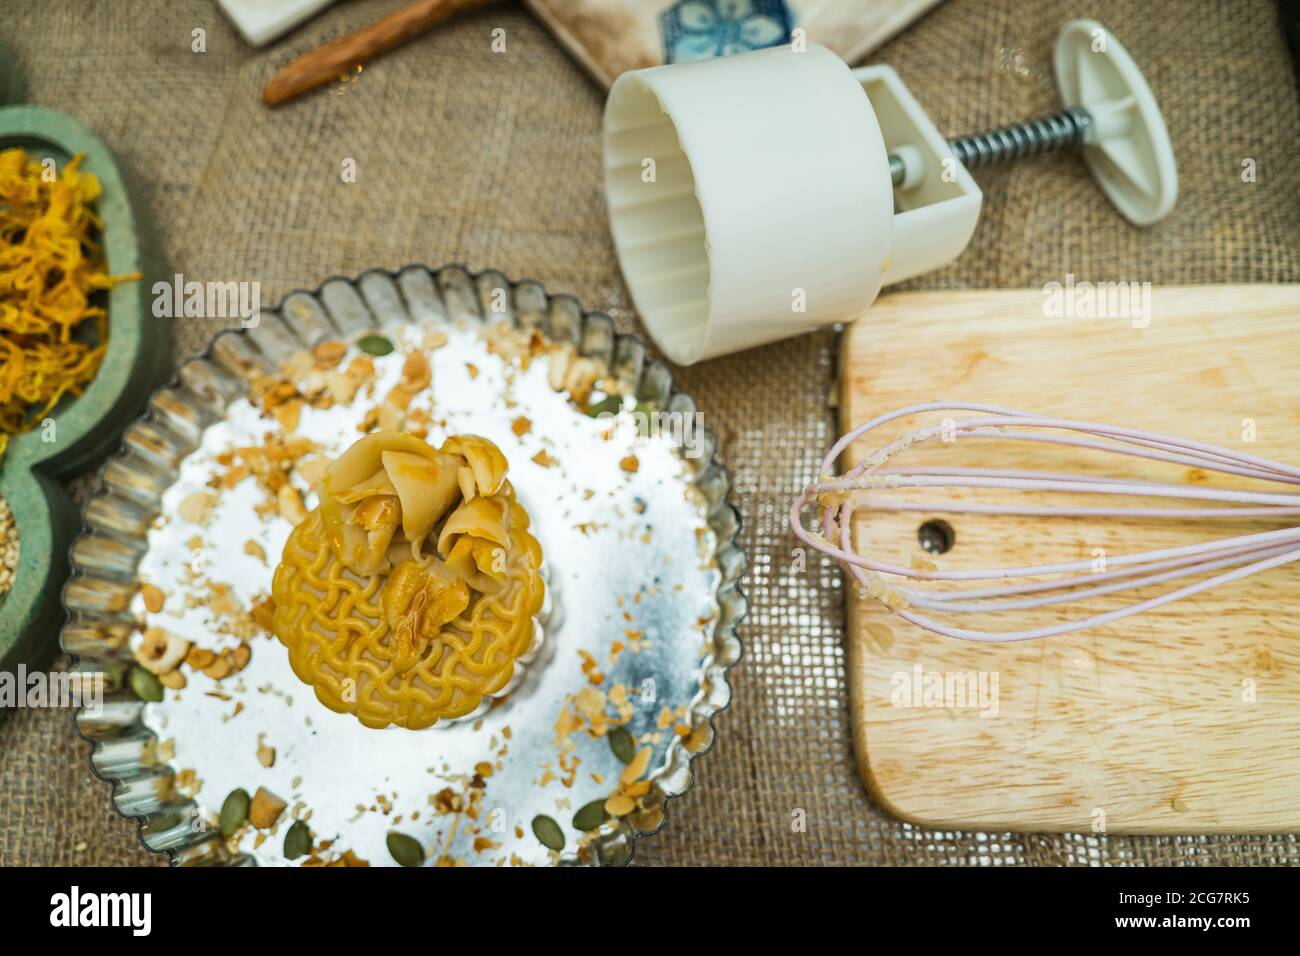 el molde de madera para el pastel de luna, pastel de luna cantonés casero en la bandeja de hornear antes de hornear para el festival tradicional. Viajes, vacaciones, comida conceps Foto de stock